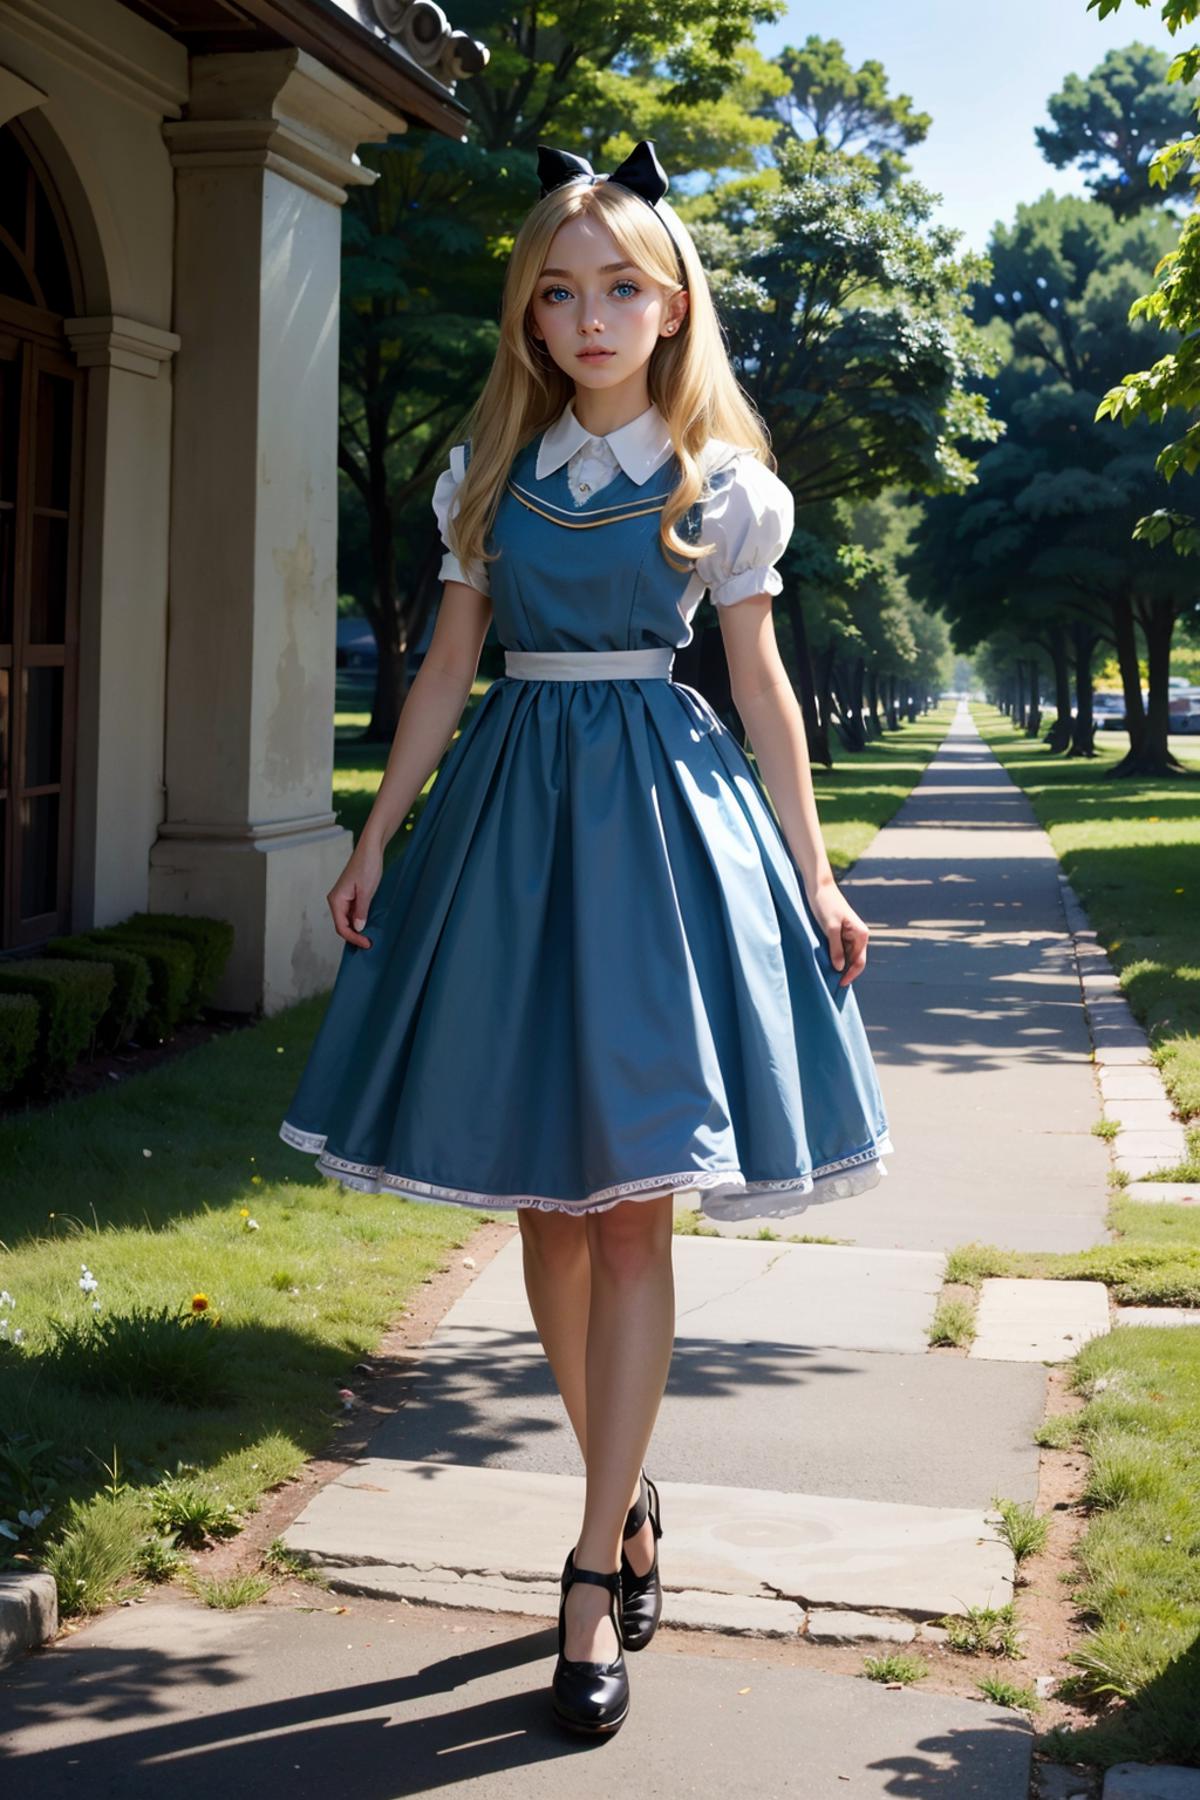 Alice in Wonderland image by BloodRedKittie